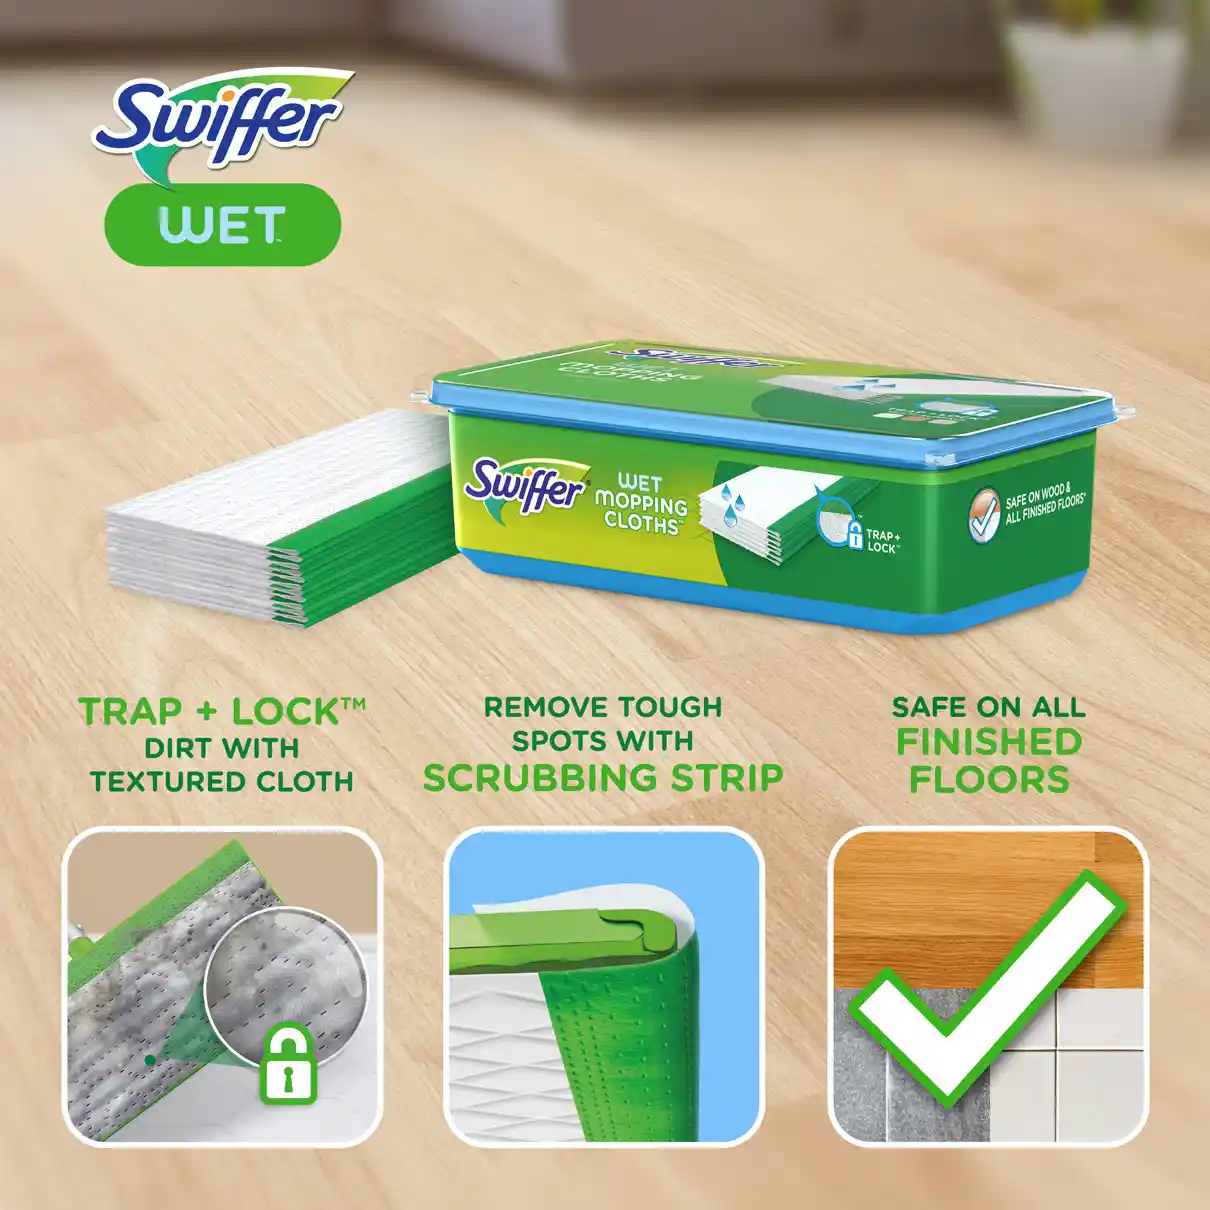 Wet & Dry Floor Mop Starter Kit  Swiffer® Sweeper® Comparable